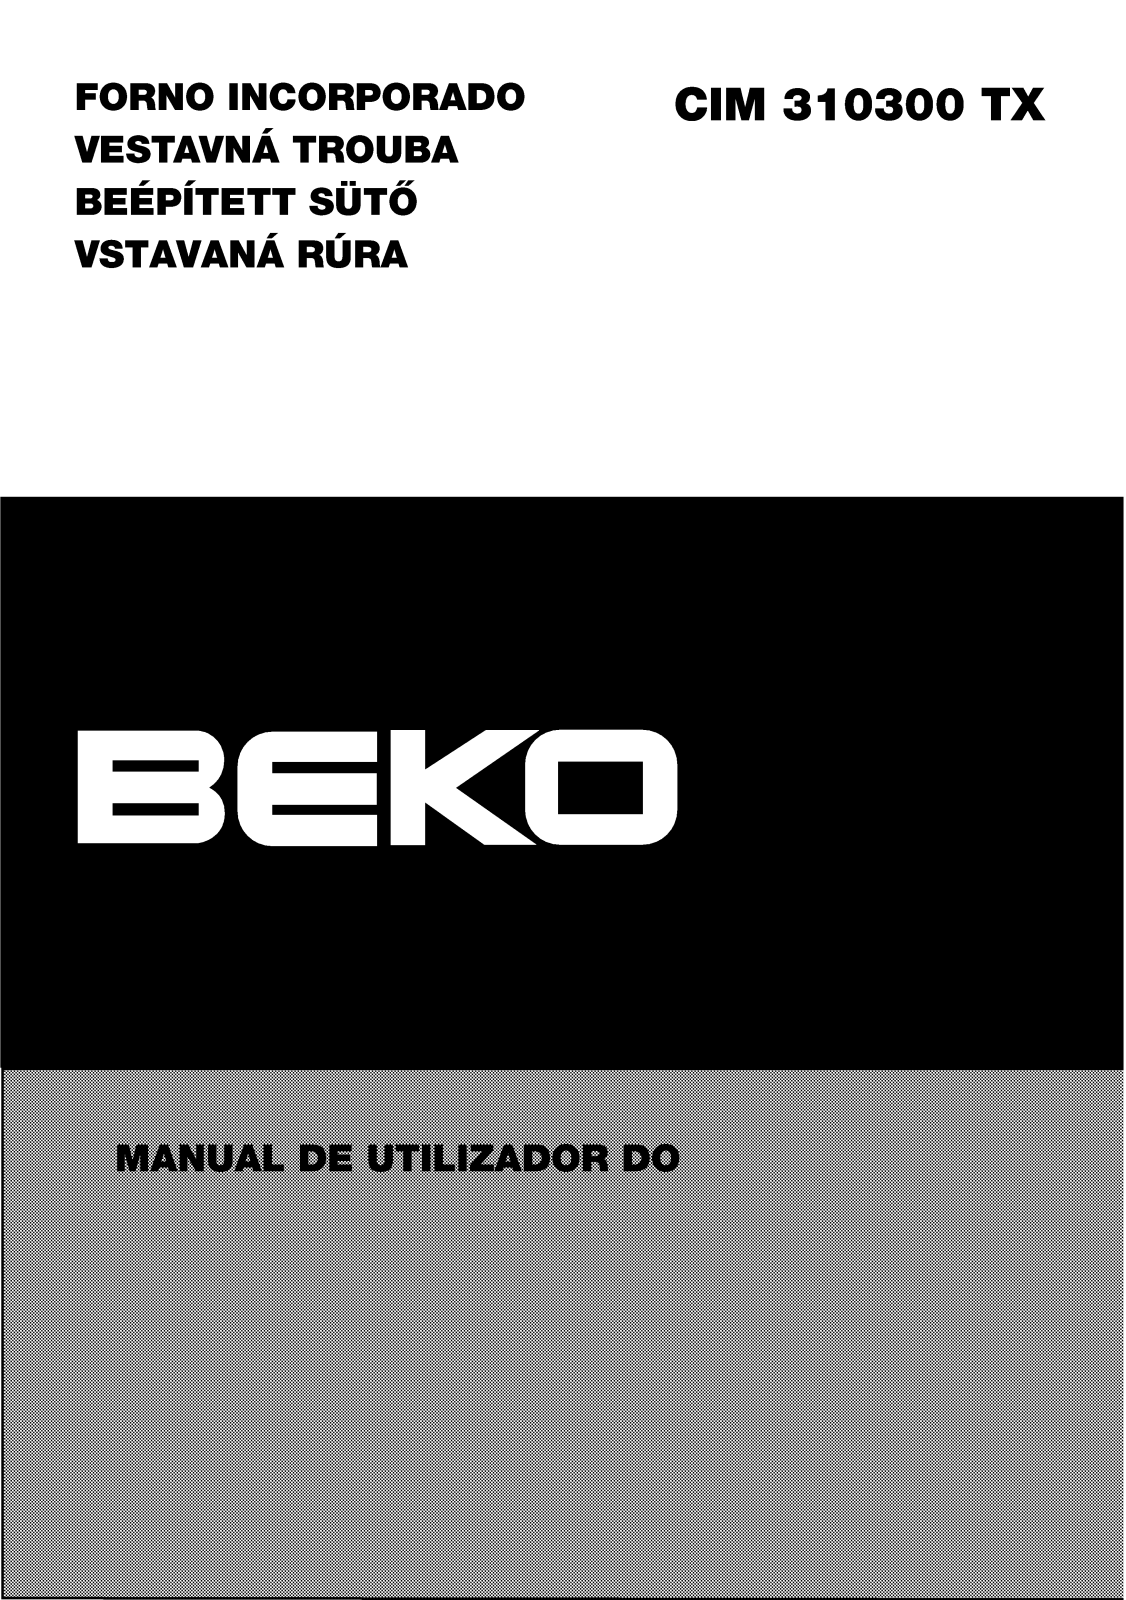 Beko CIM 310300 TX Manual